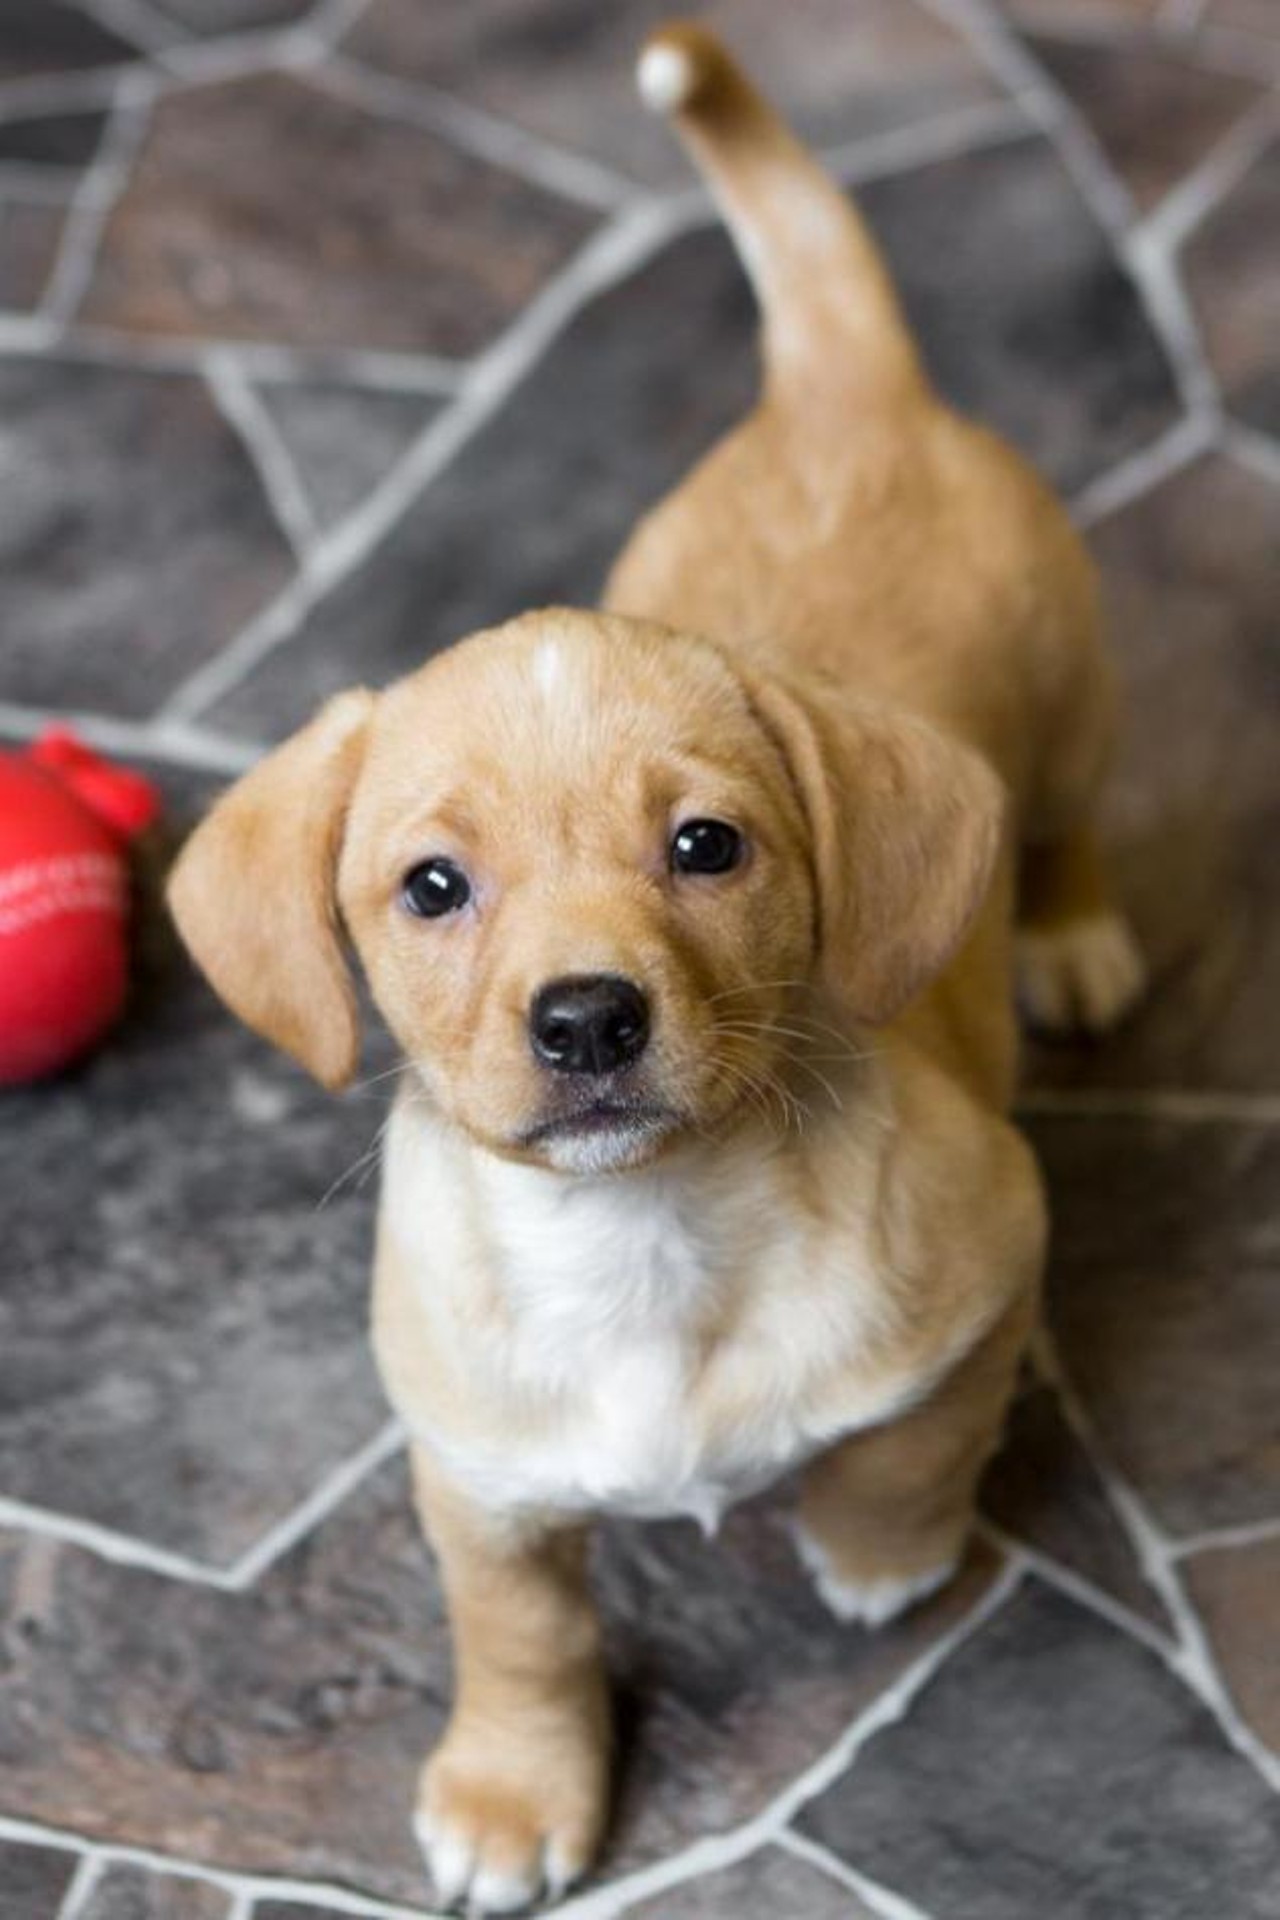  Stella
Hound | Female | Puppy
BRB, going to adopt Stella asap.